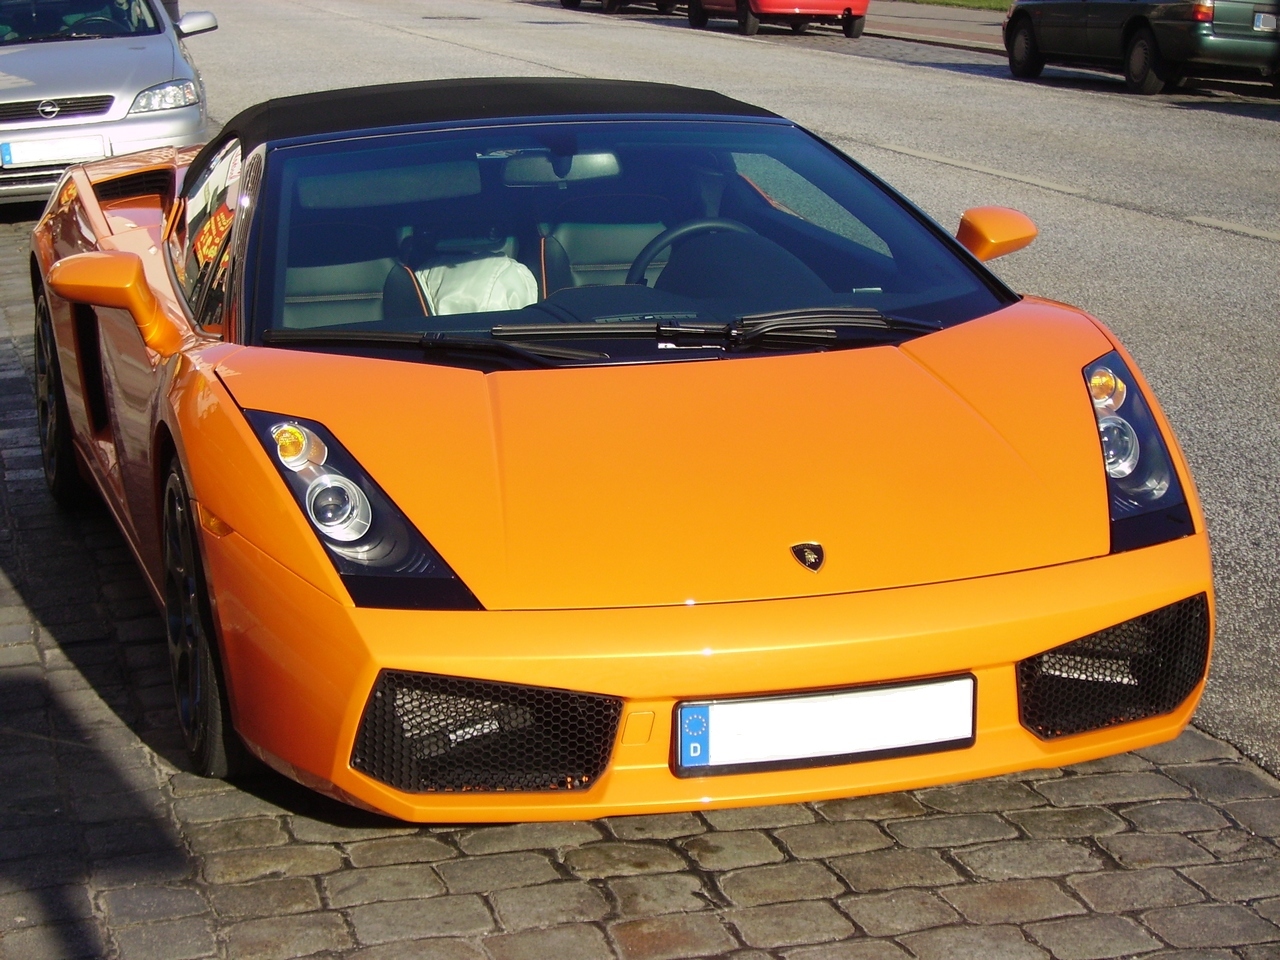 Lamborghini Gallardo Spyder Orange